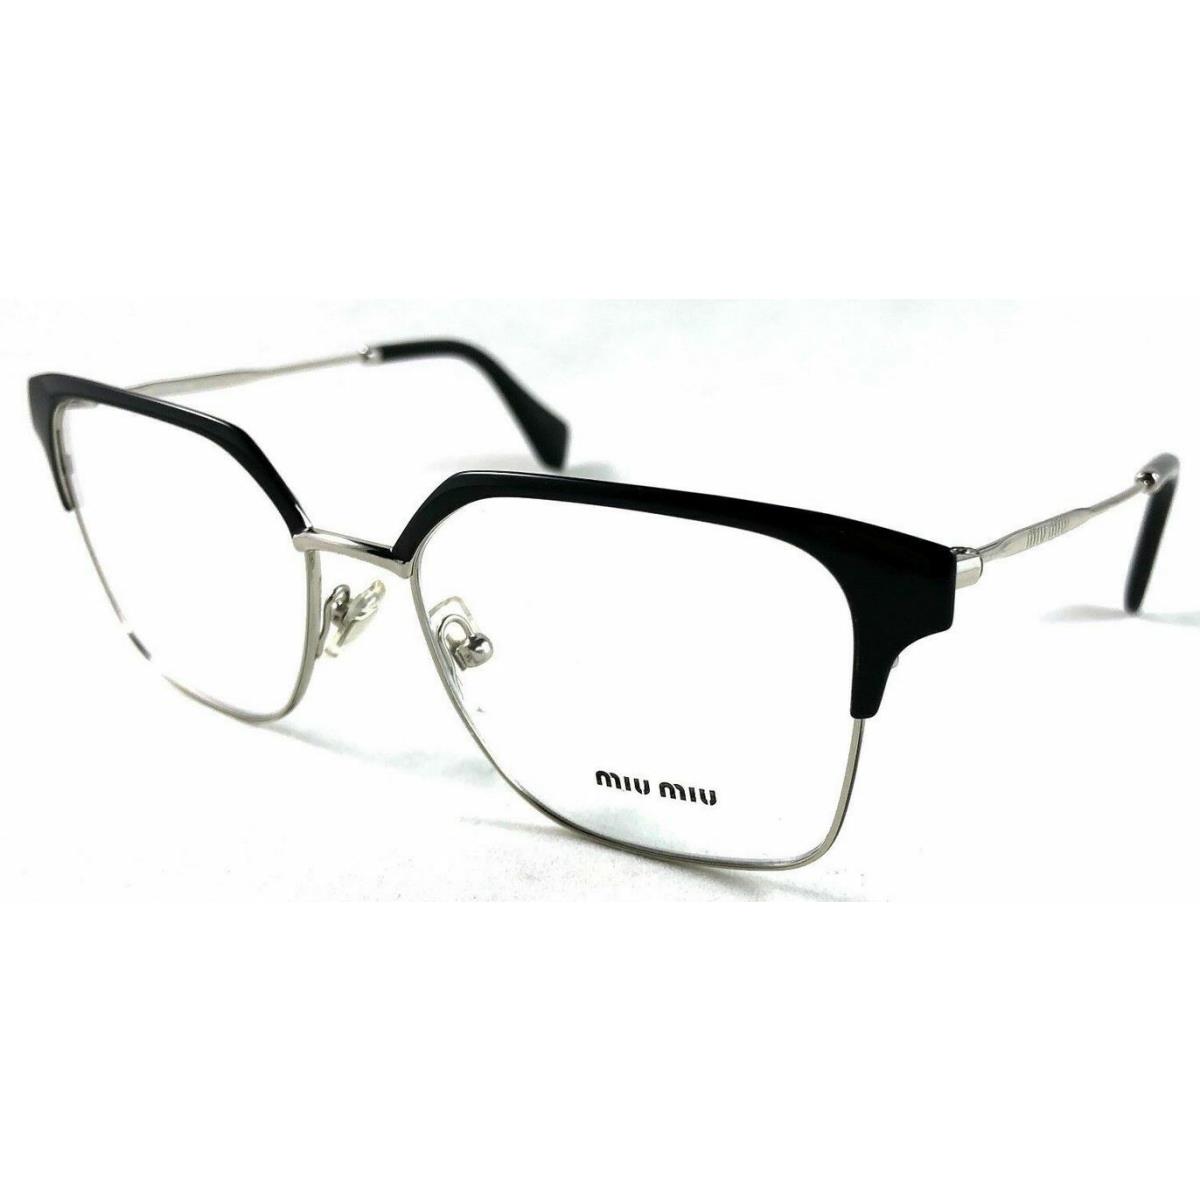 Miu Miu Eyeglasses VMU52O 1AB-1O1 Black Frames 52MM Rx-able ST